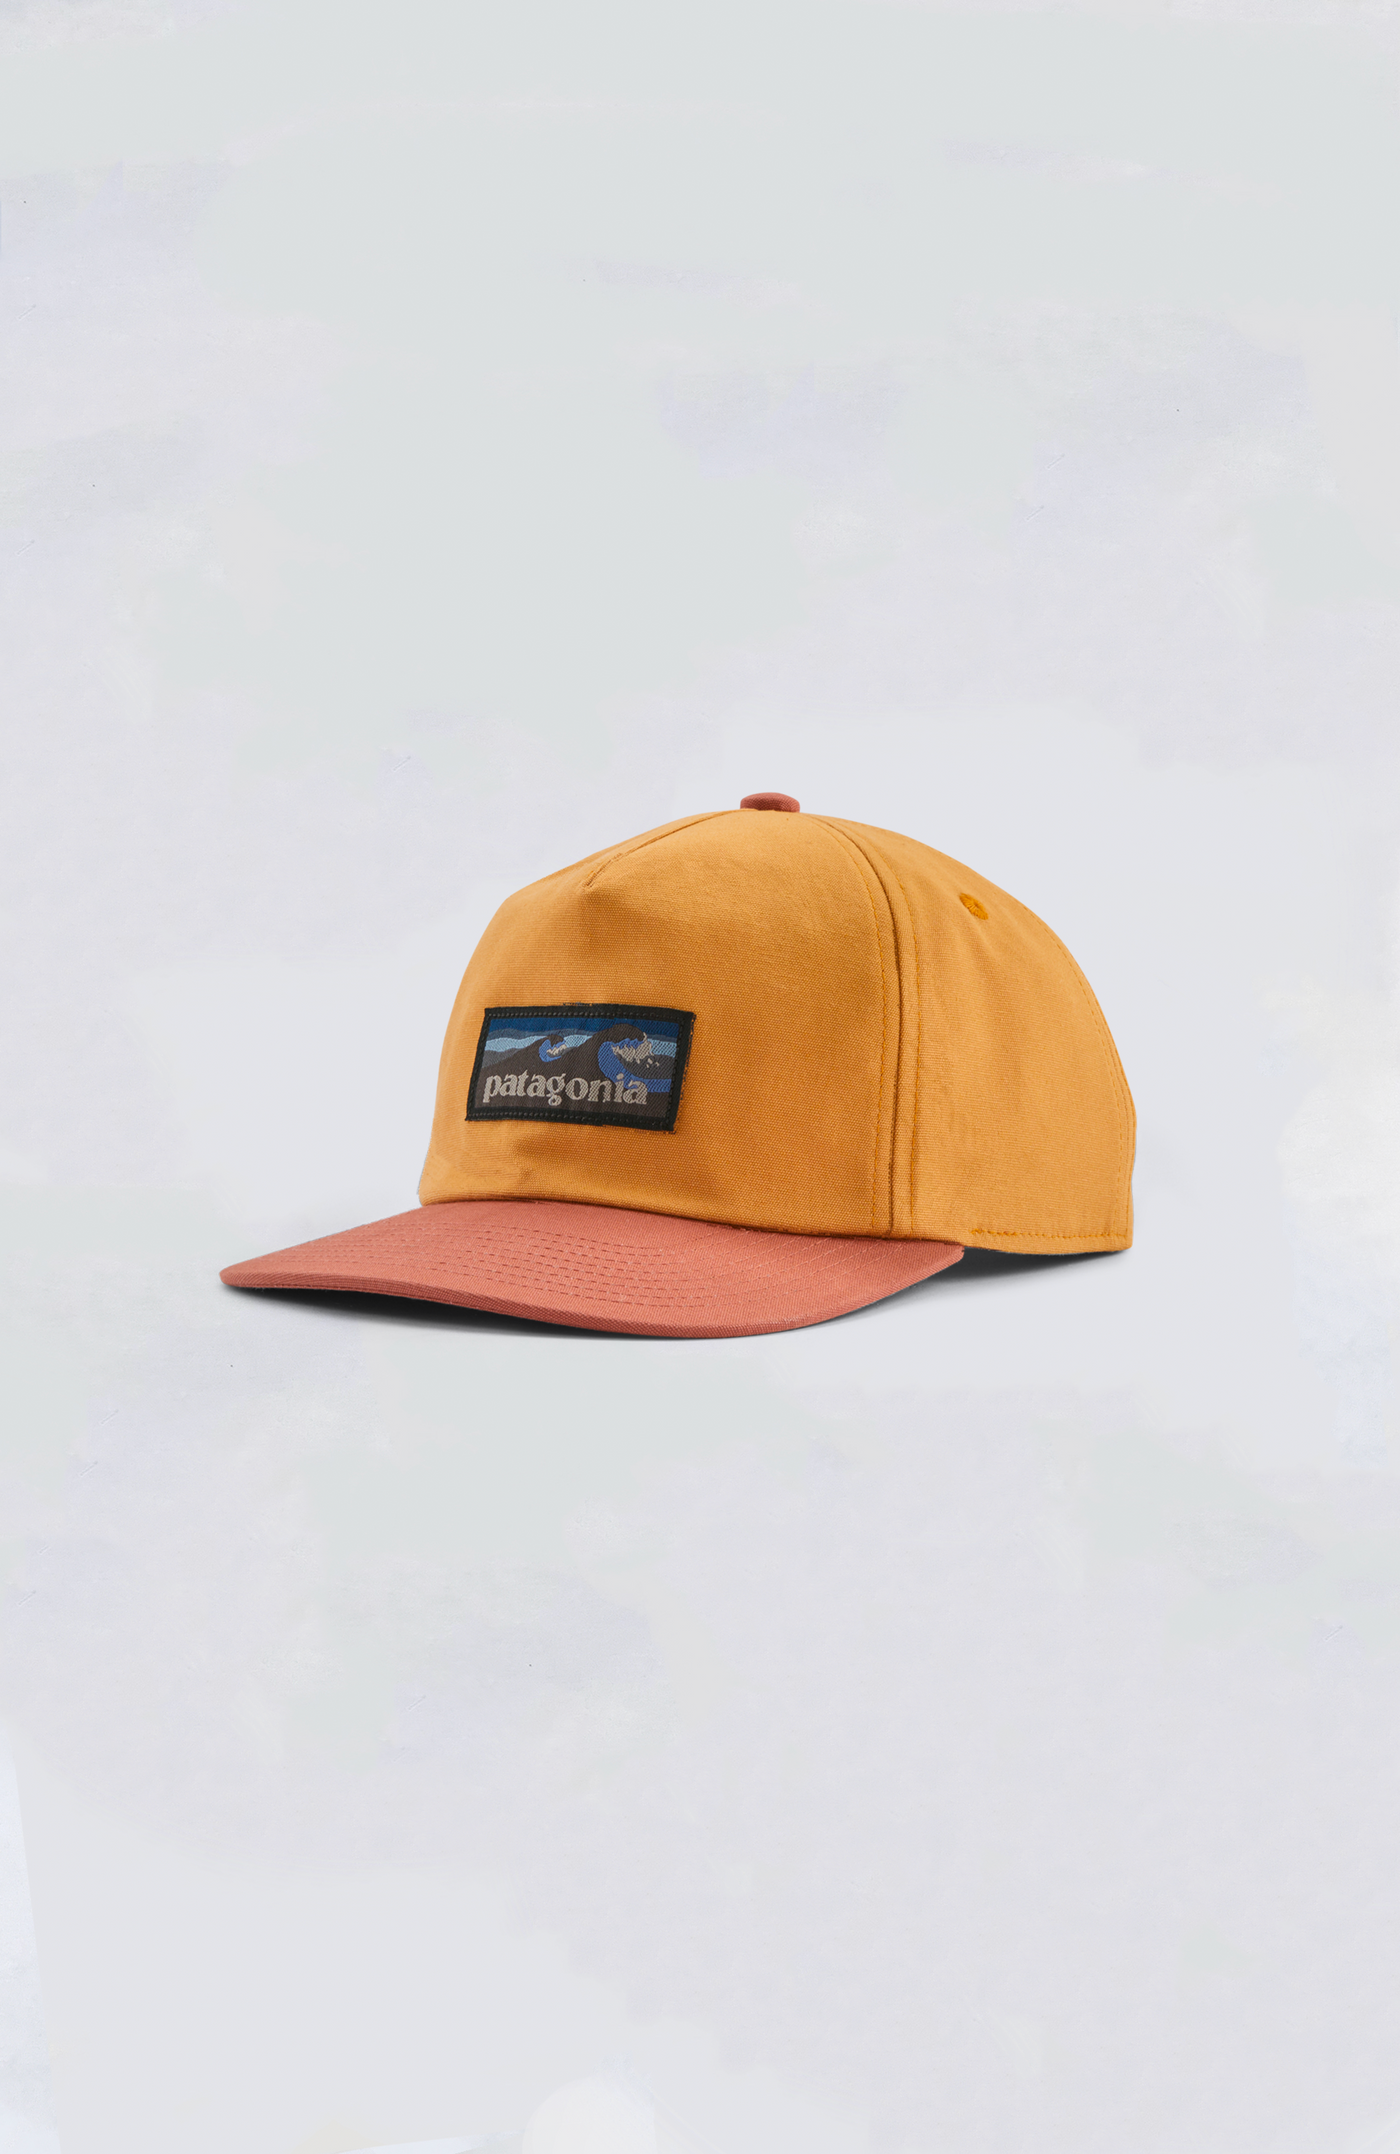 Patagonia Hat - Boardshort Label Funfarer Cap